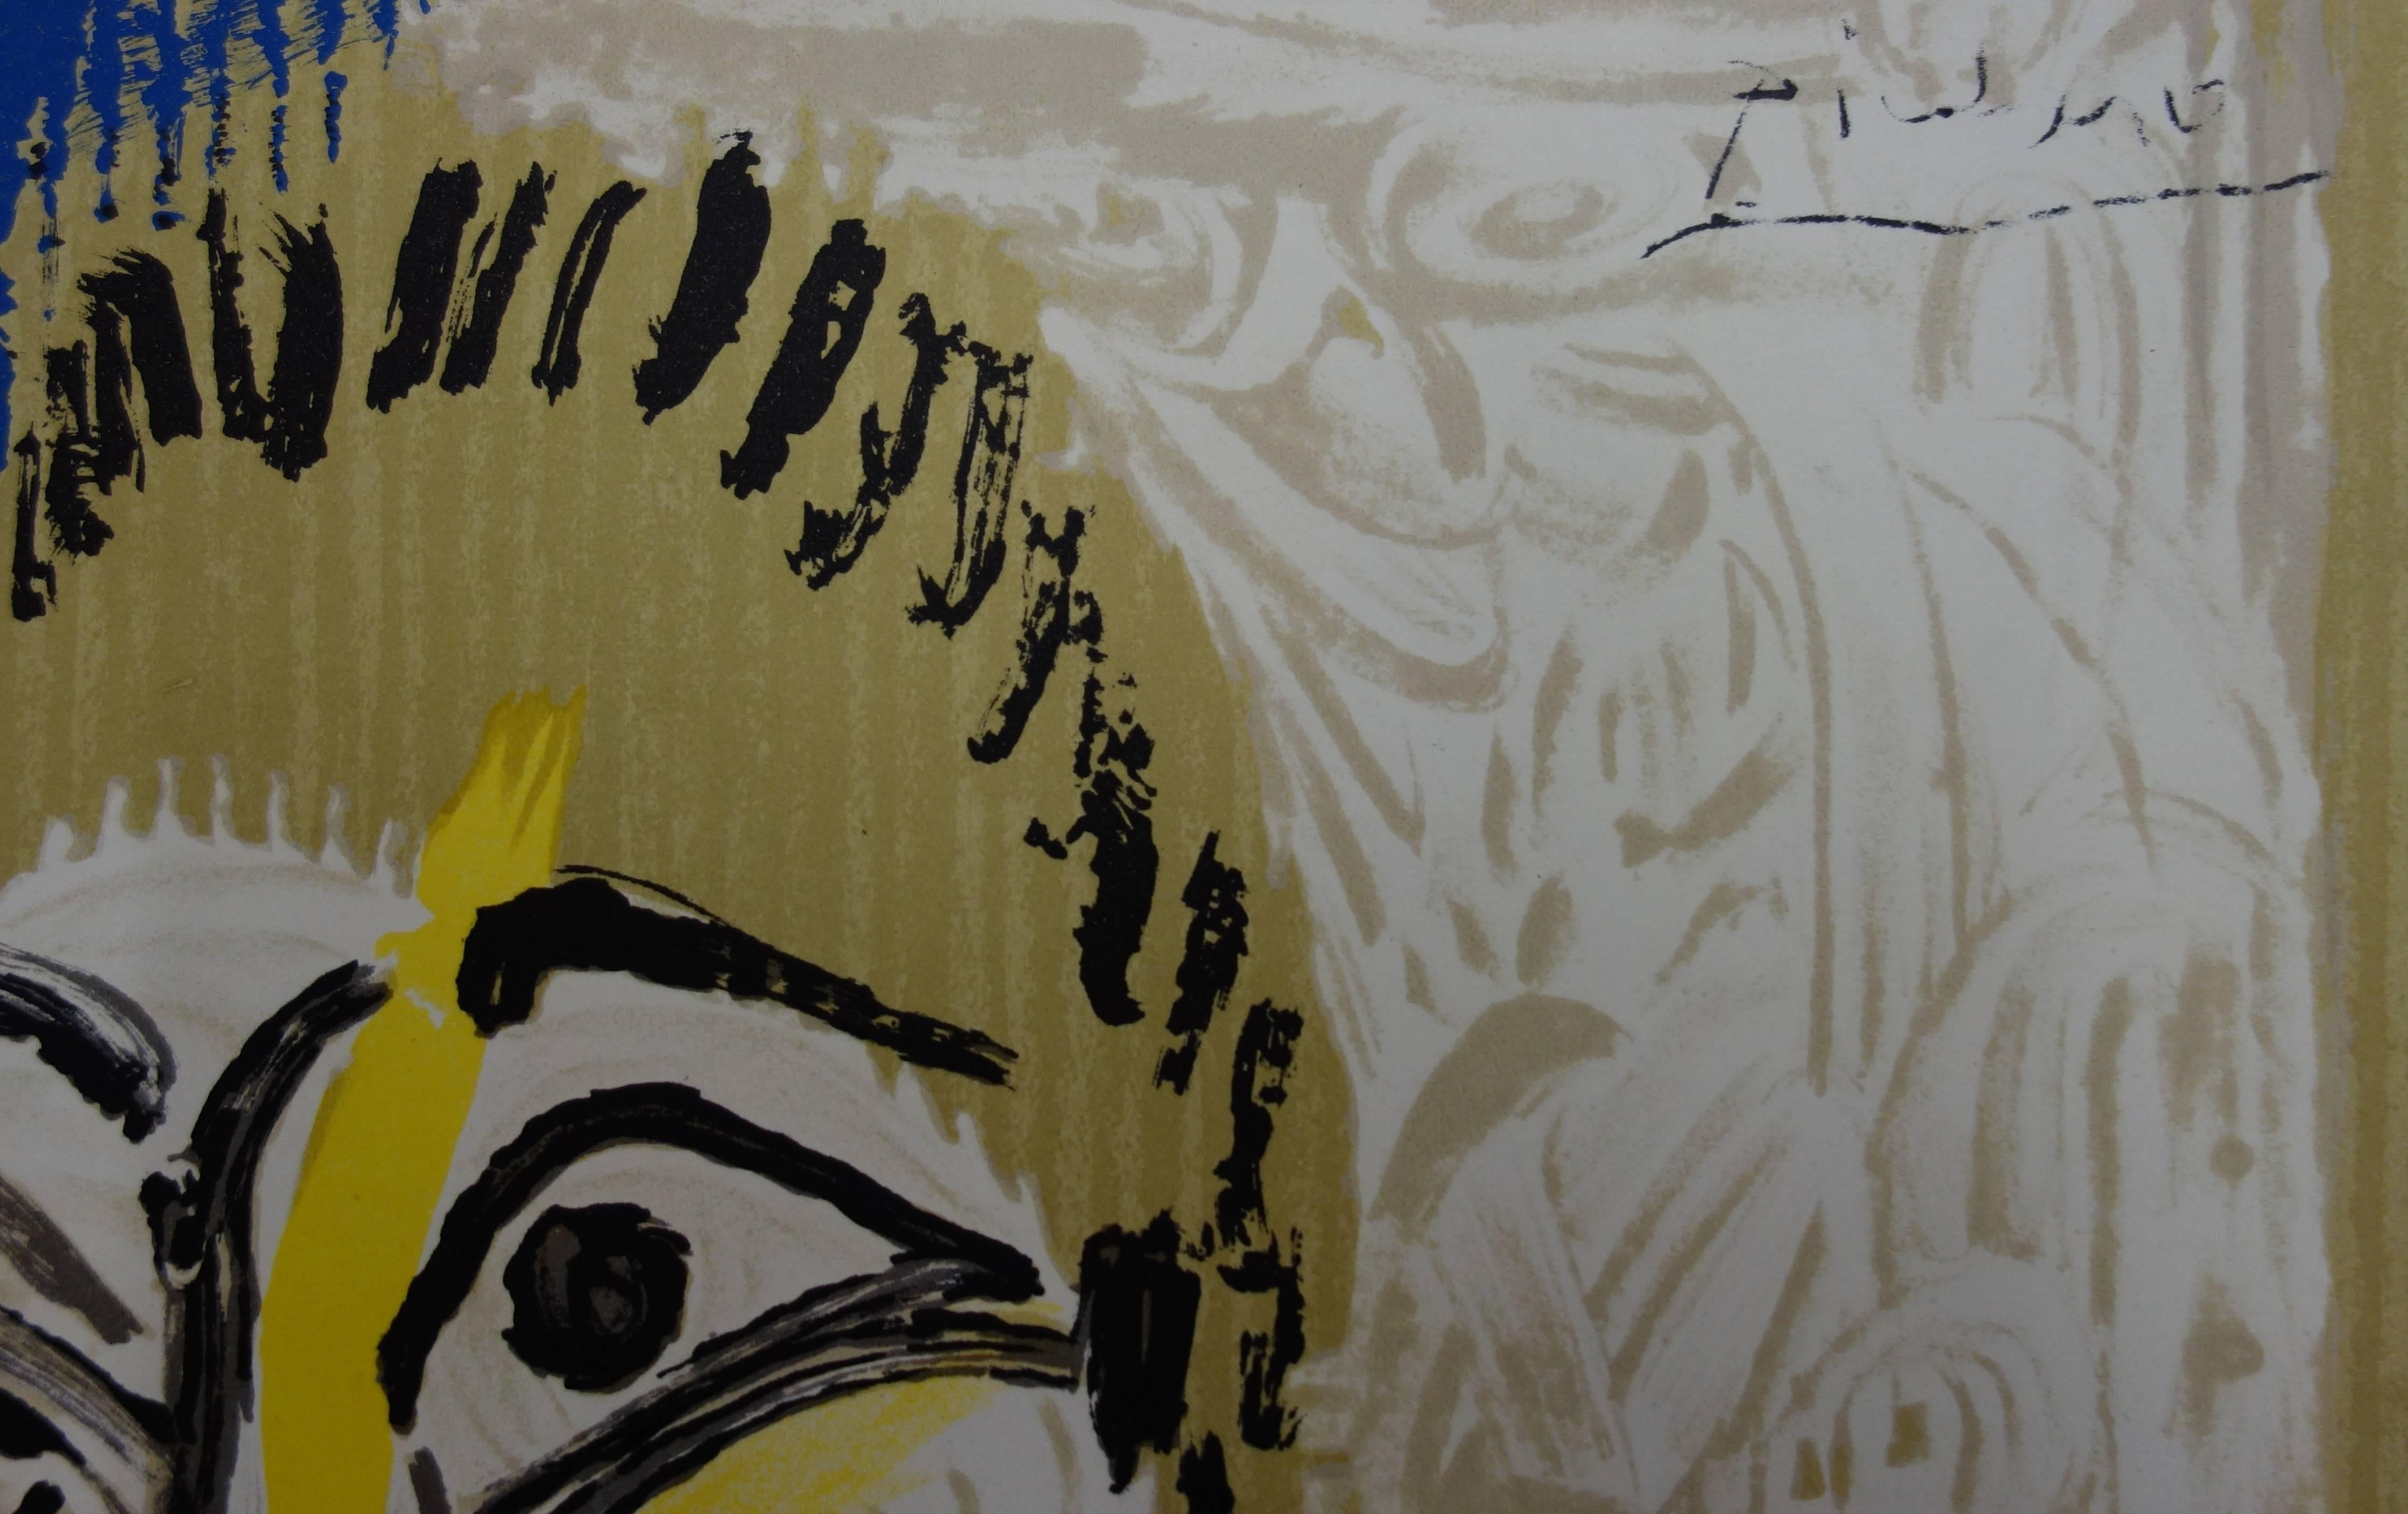 Affiche de l'exposition « Imaginary Portraits » ( Portraits imaginaires) : Homme avec une barbe - Lithographie - Print de (after) Pablo Picasso